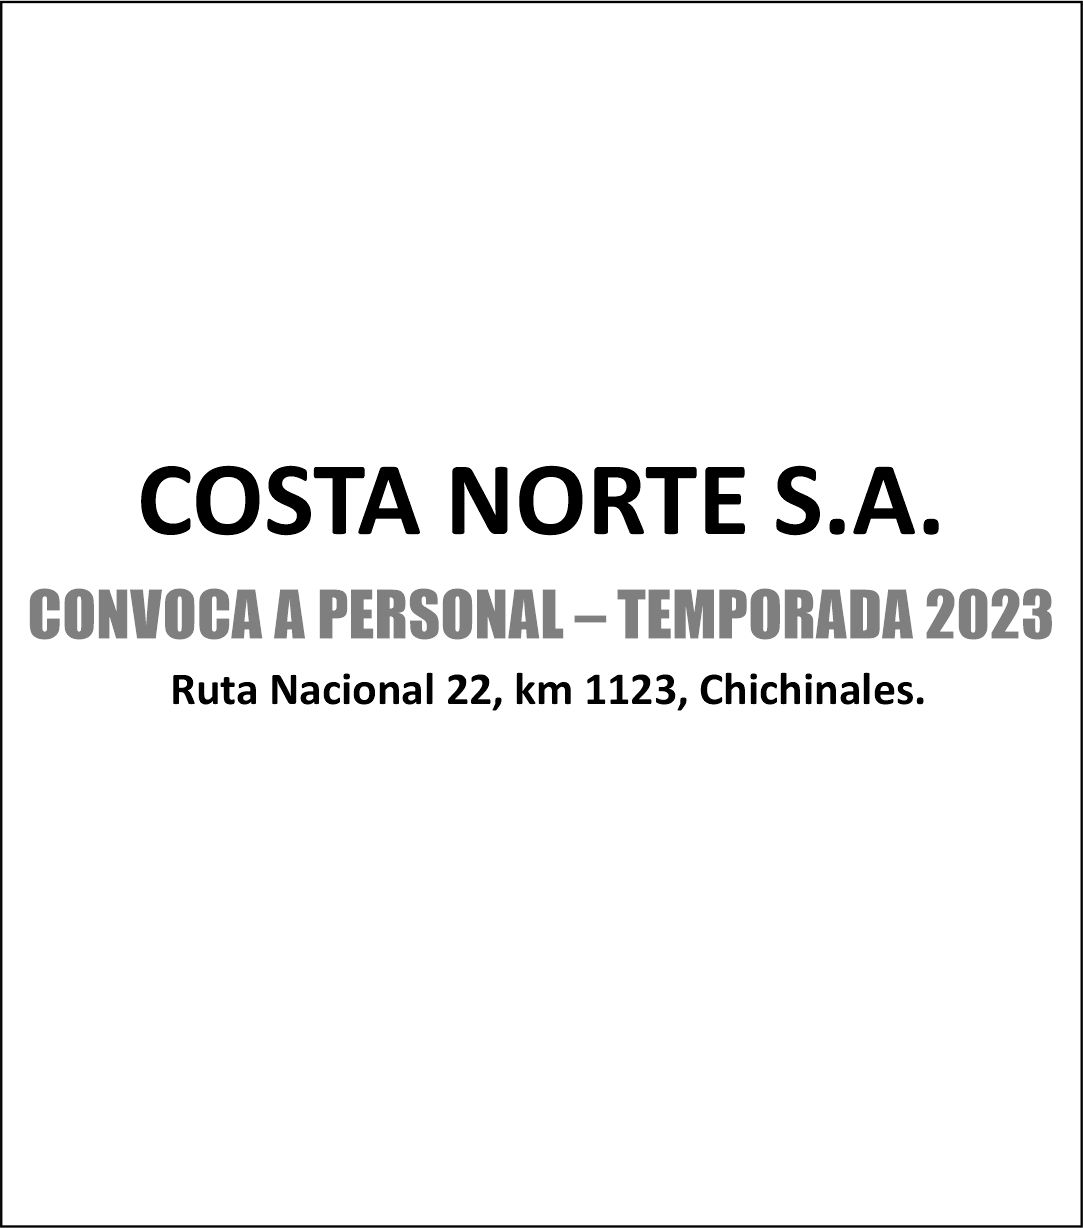 COSTA NORTE S.A. CONVOCA A PERSONAL PARA TEMPORADA 2023